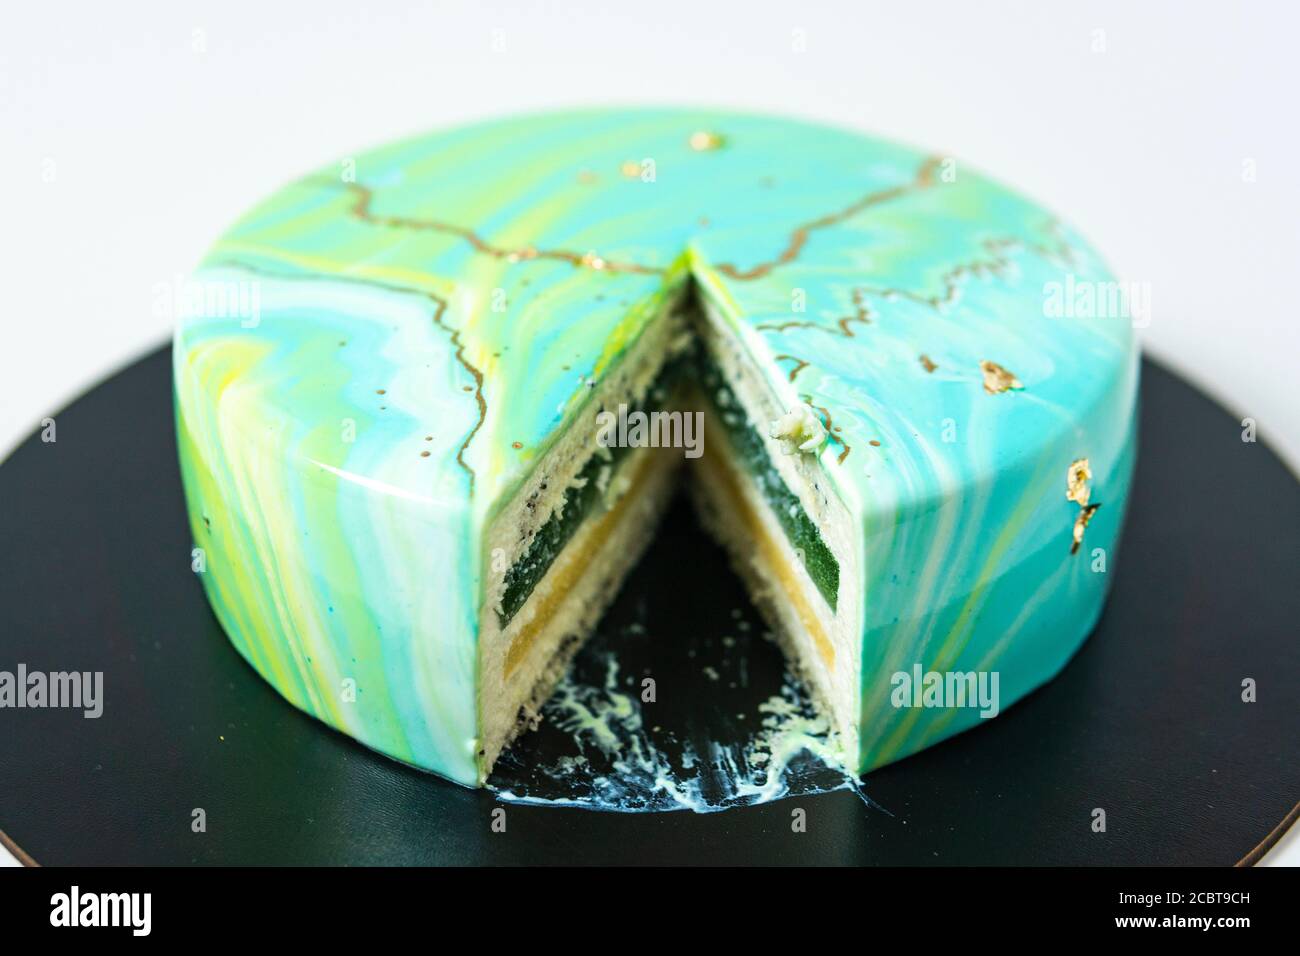 Nahaufnahme von Mousse Kuchen bedeckt blauen und grünen Spiegel Glasur. Französisches Dessert. Gefrorene Spiegel Sahnehäubchen auf dem Kuchen. Backen und Süßwaren Konzept. Weiß Stockfoto